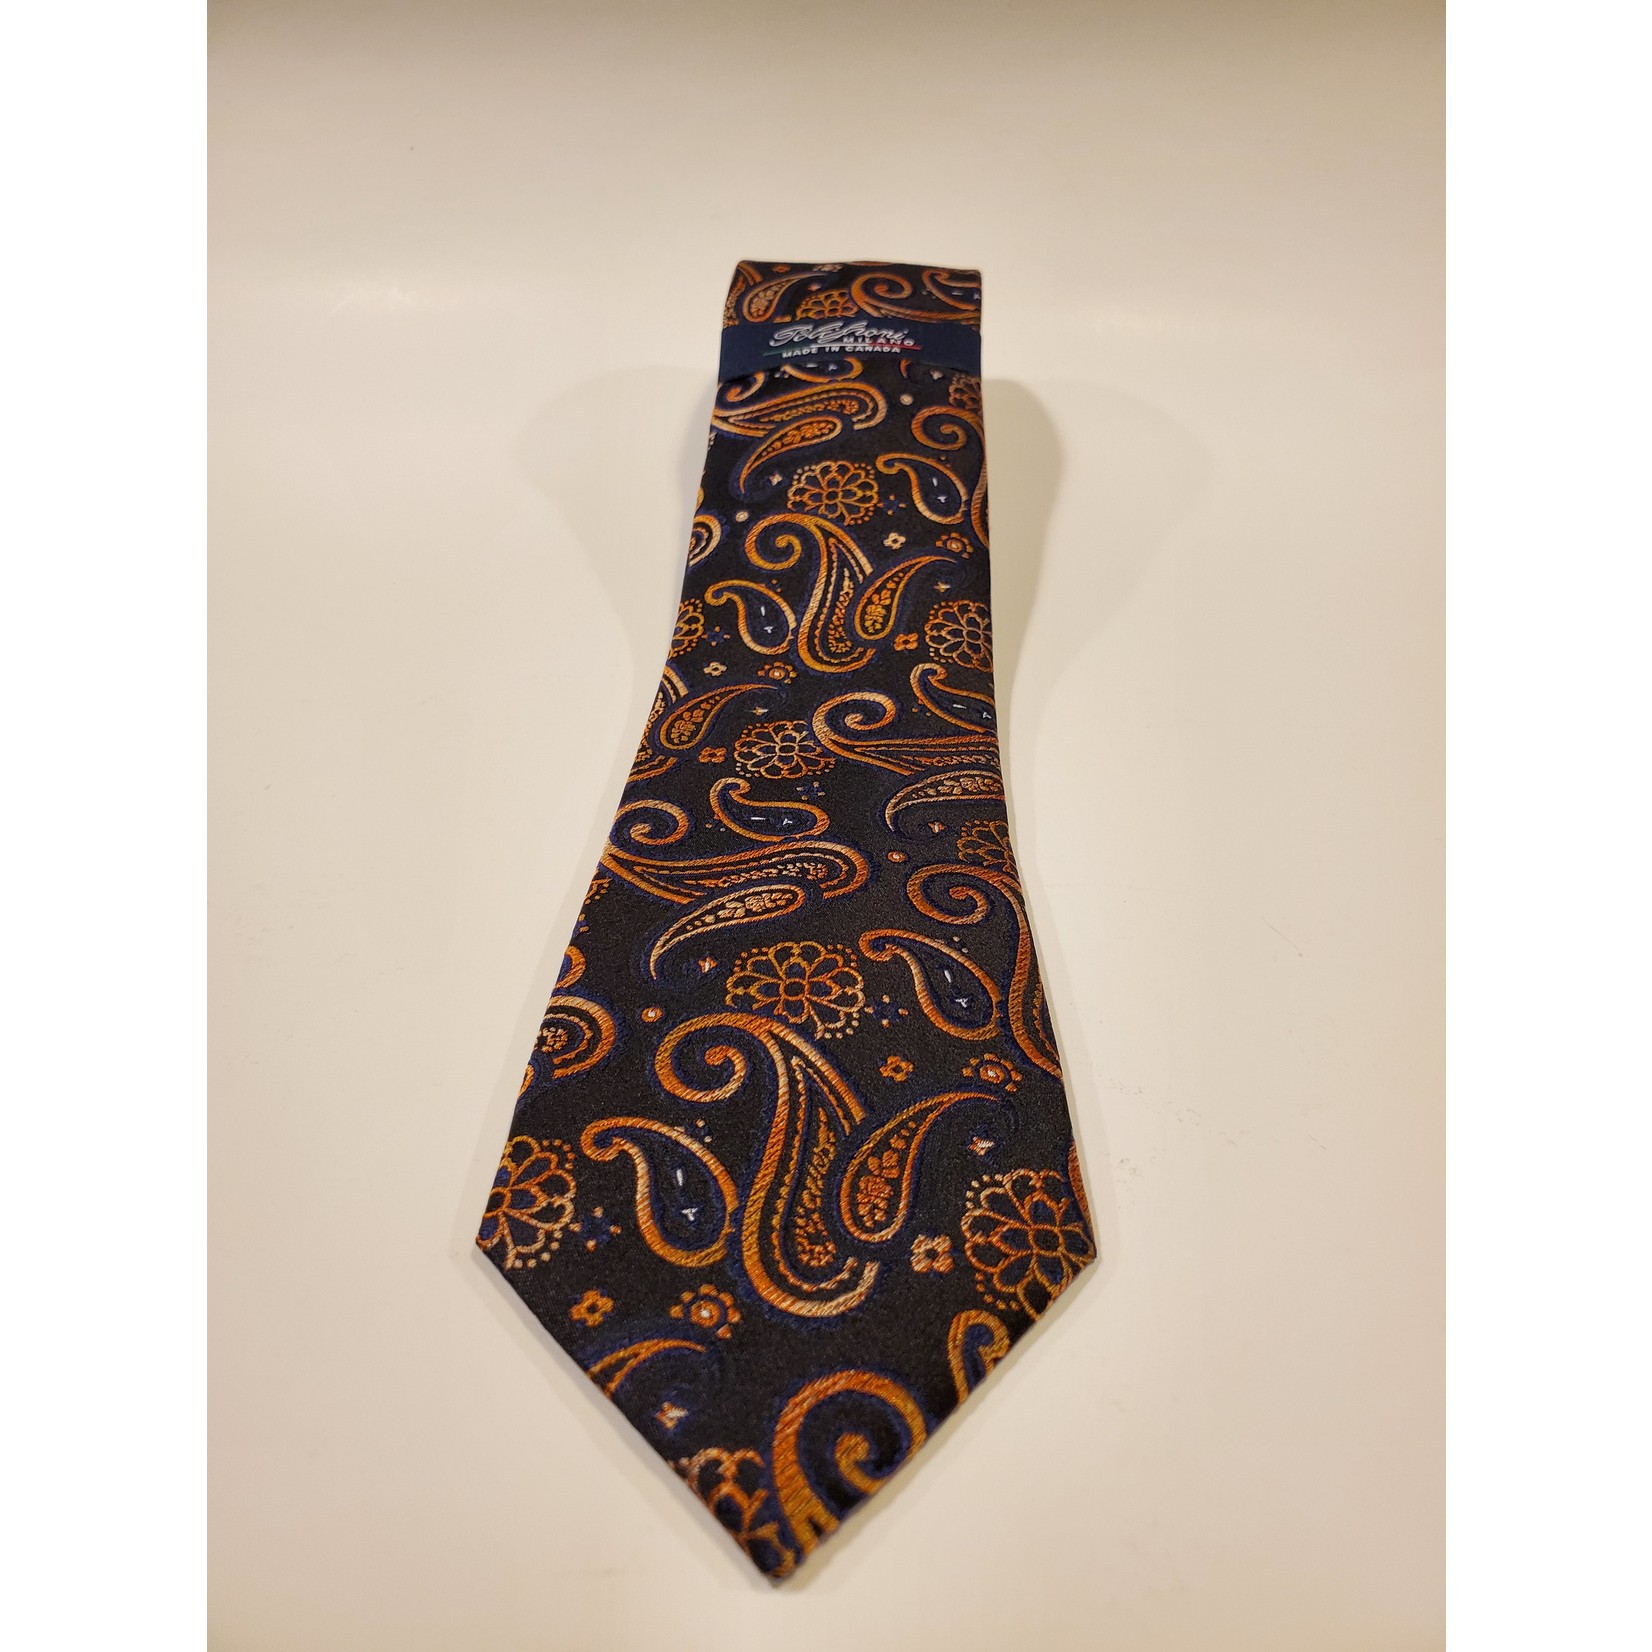 Serica 201964 Jacquard Silk Tie A - Orange/ Black Paisley